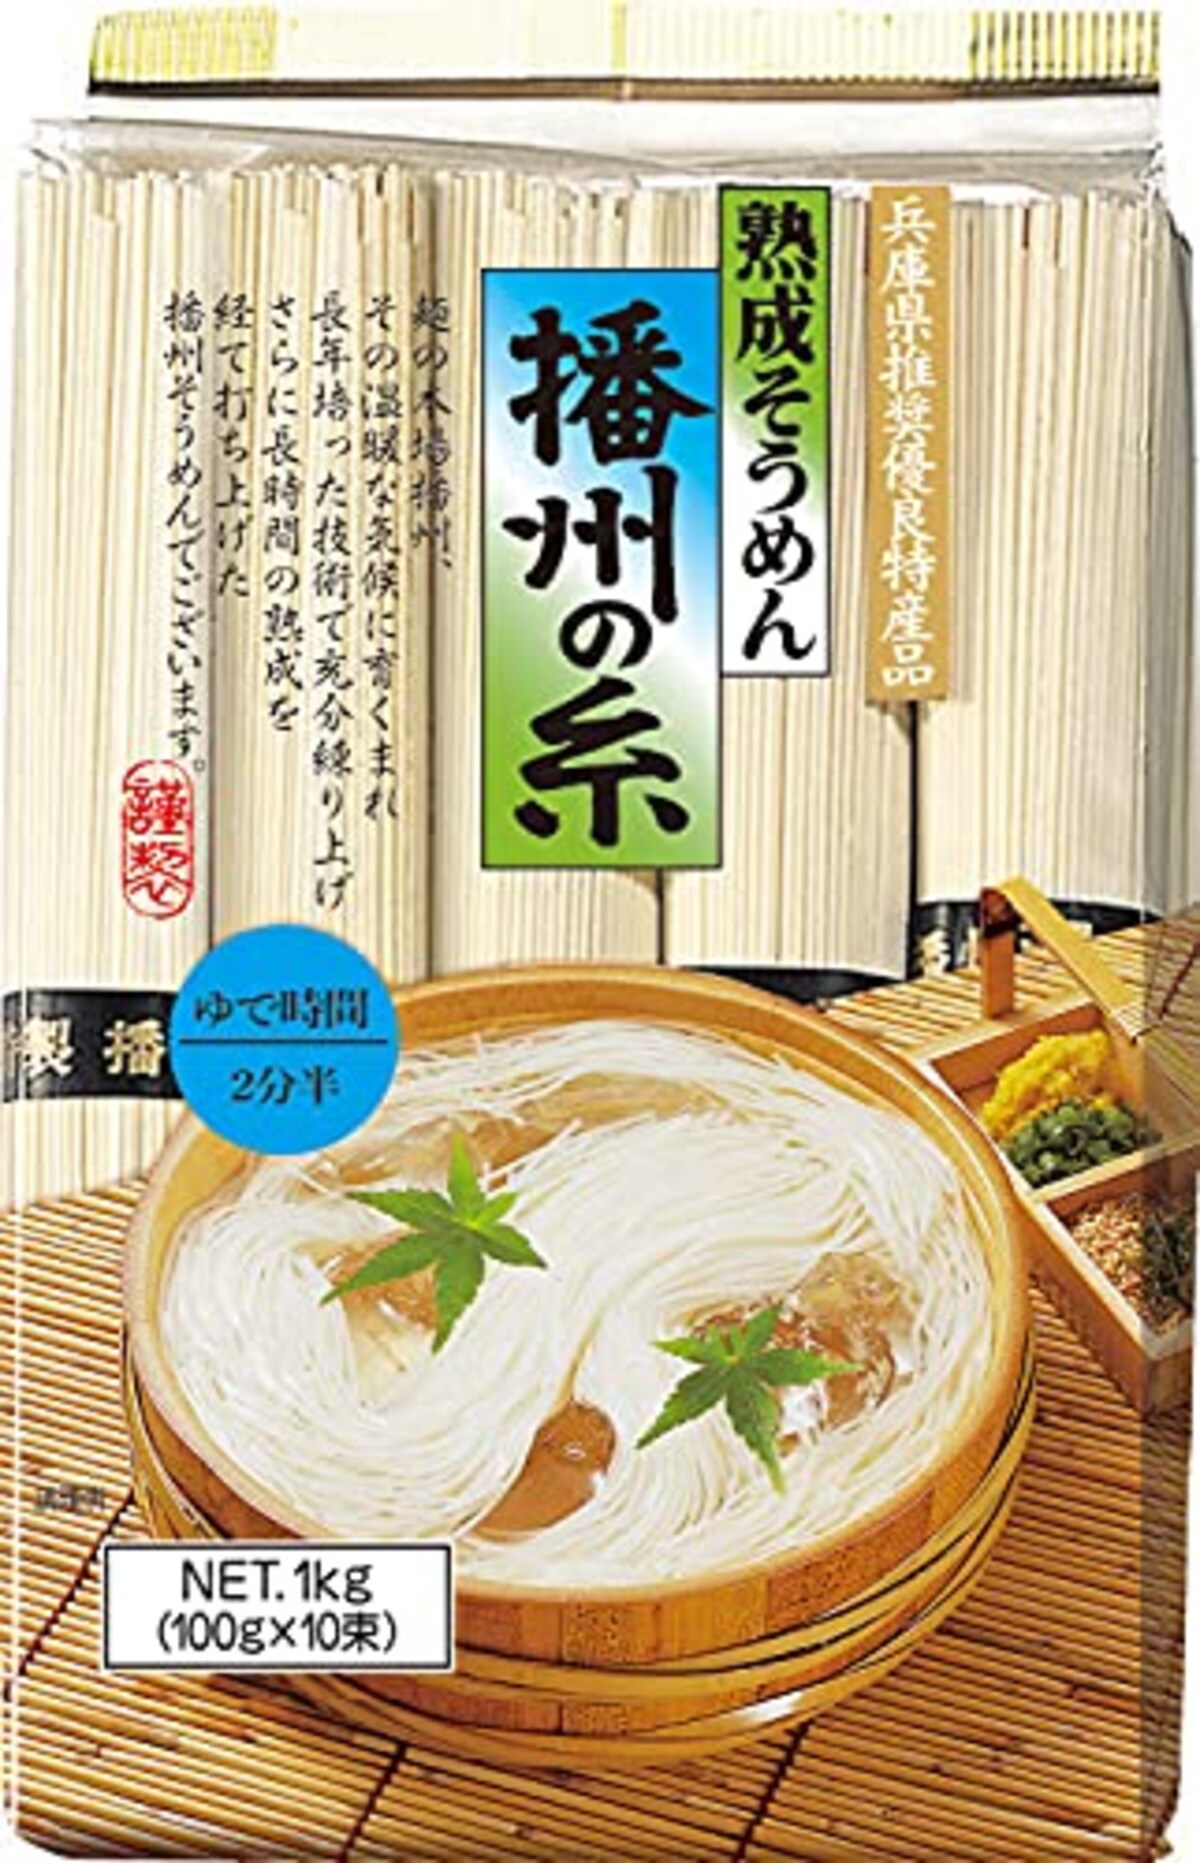 熟成素麺 播州の糸